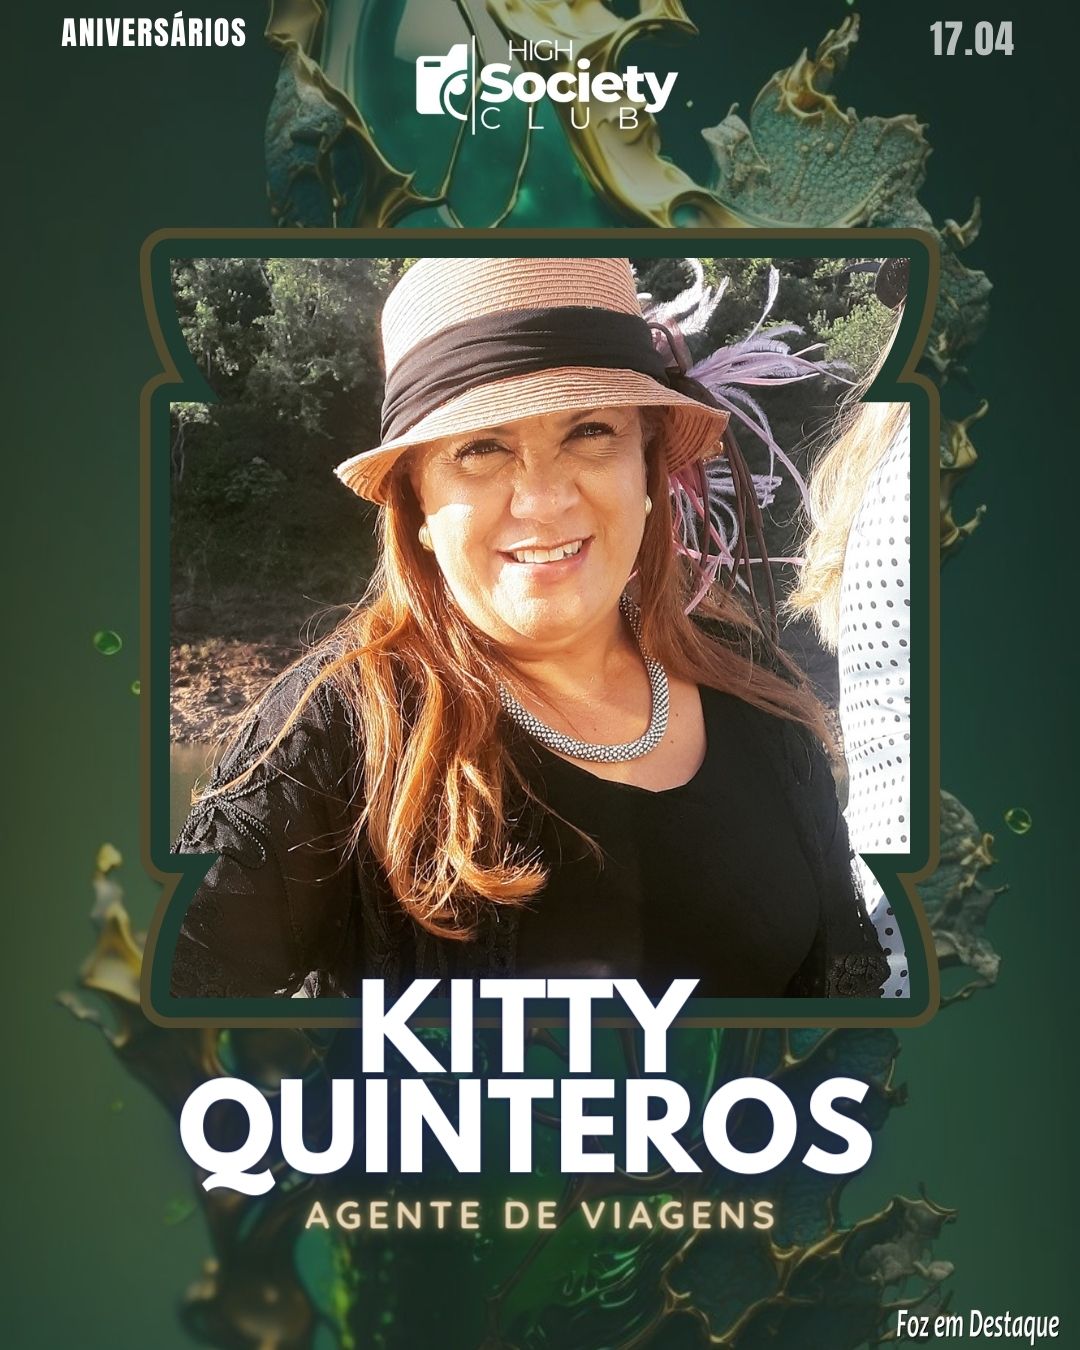 Kitty Quinteros - Agente de Viagens 
Aniversários 17 de Abril 2024  High Society Club Foz em Destaque